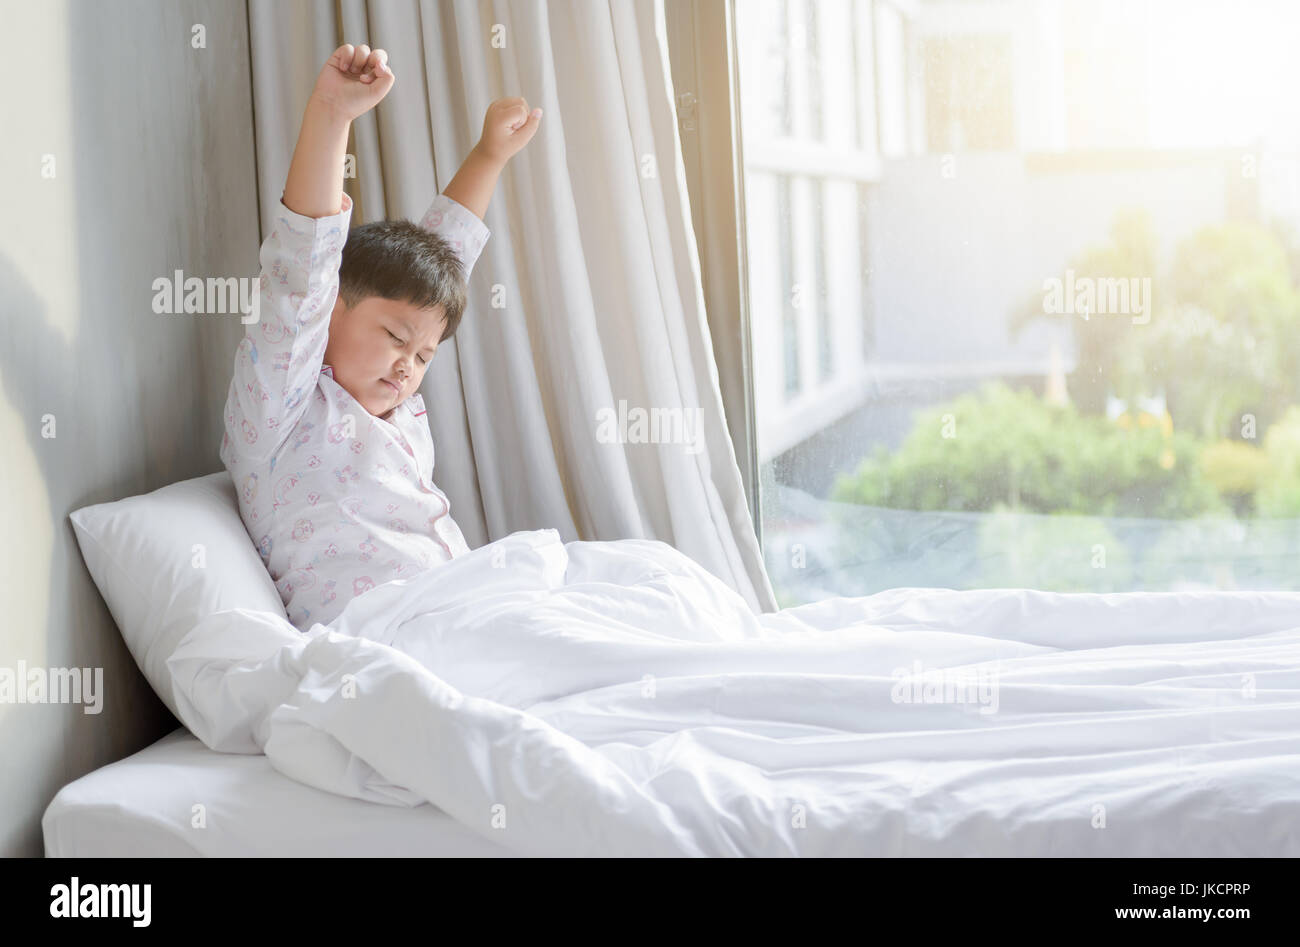 Мальчик проснулся ночью из за шума. Мальчик проснулся. Мальчишки в постели в пижаме. Мальчик сидит на кровати. Фотосессия мальчика в пижаме на кровати.